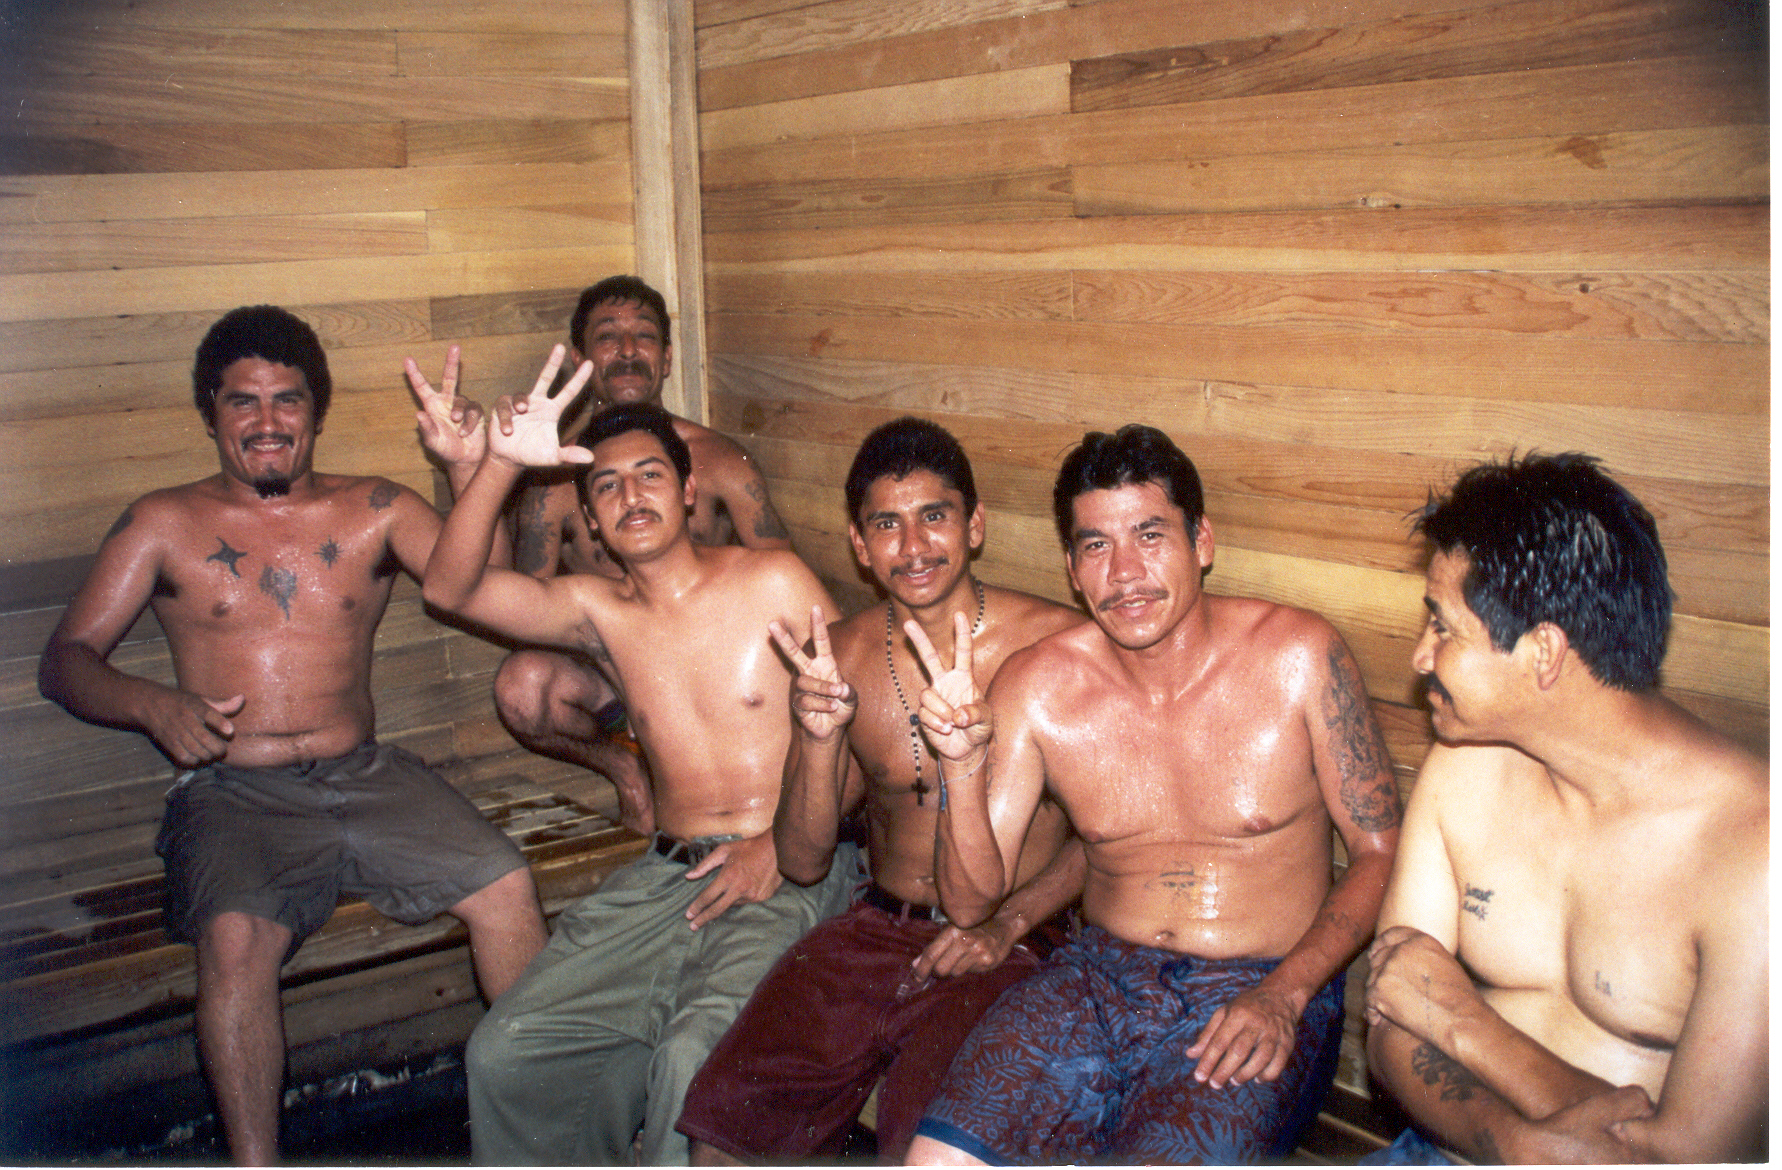 Sweating drugs out in Narconon sauna detoxification program, Ensenada prison.